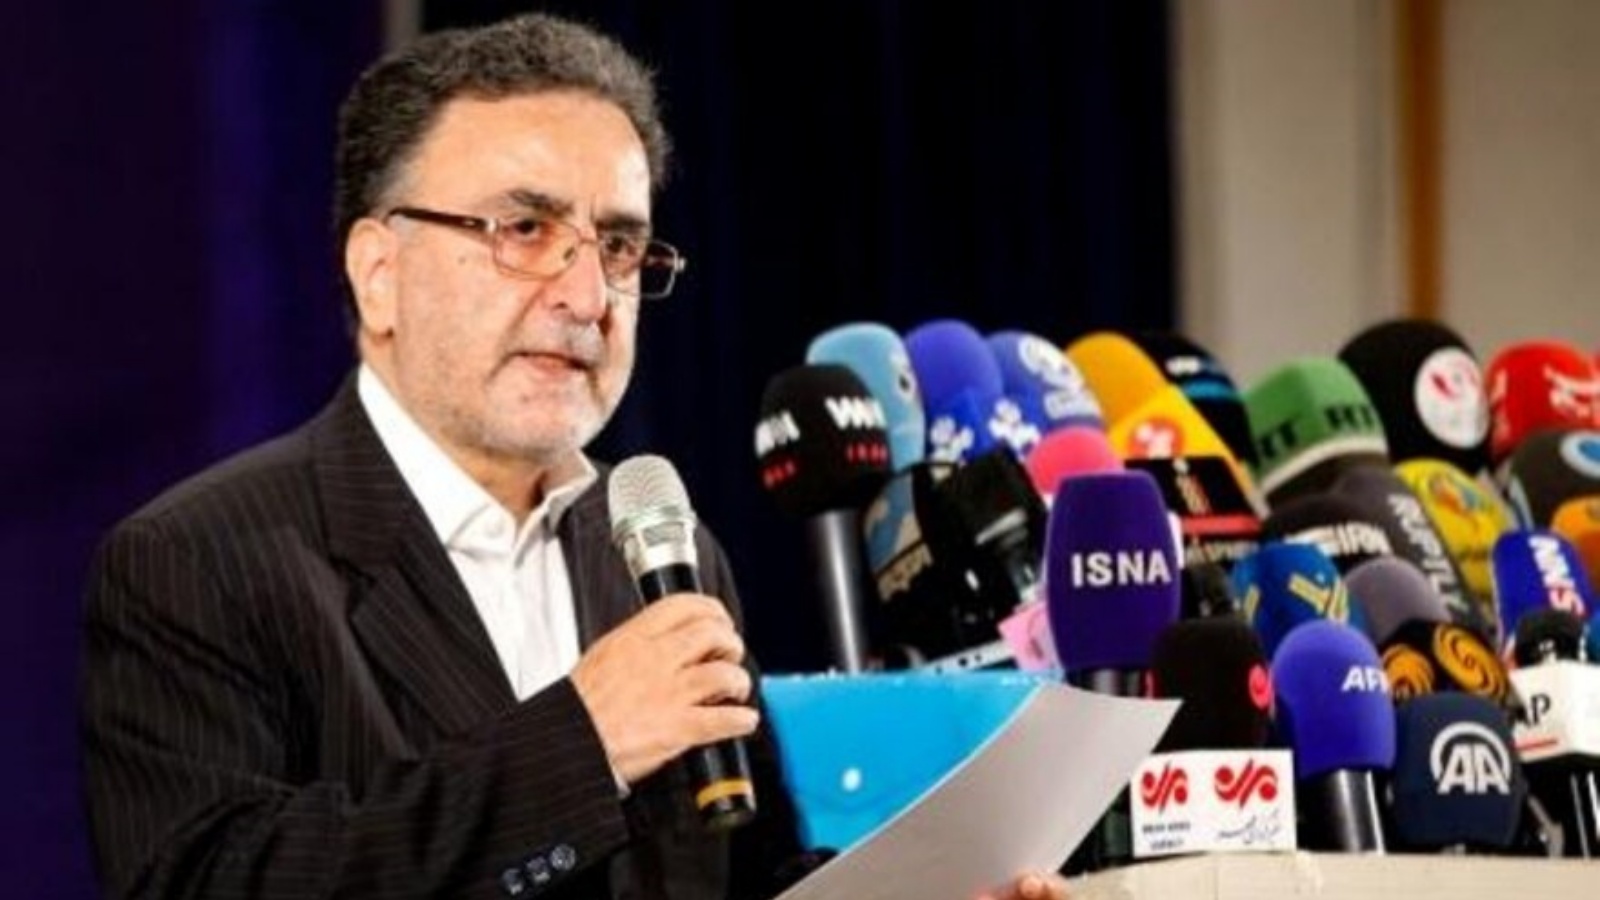  السياسي الإصلاحي مصطفى تاج زاده يتحدث للصحافيين بعد تقدّمه بطلب ترشح للانتخابات الرئاسية الإيرانية في 14 مايو 2021